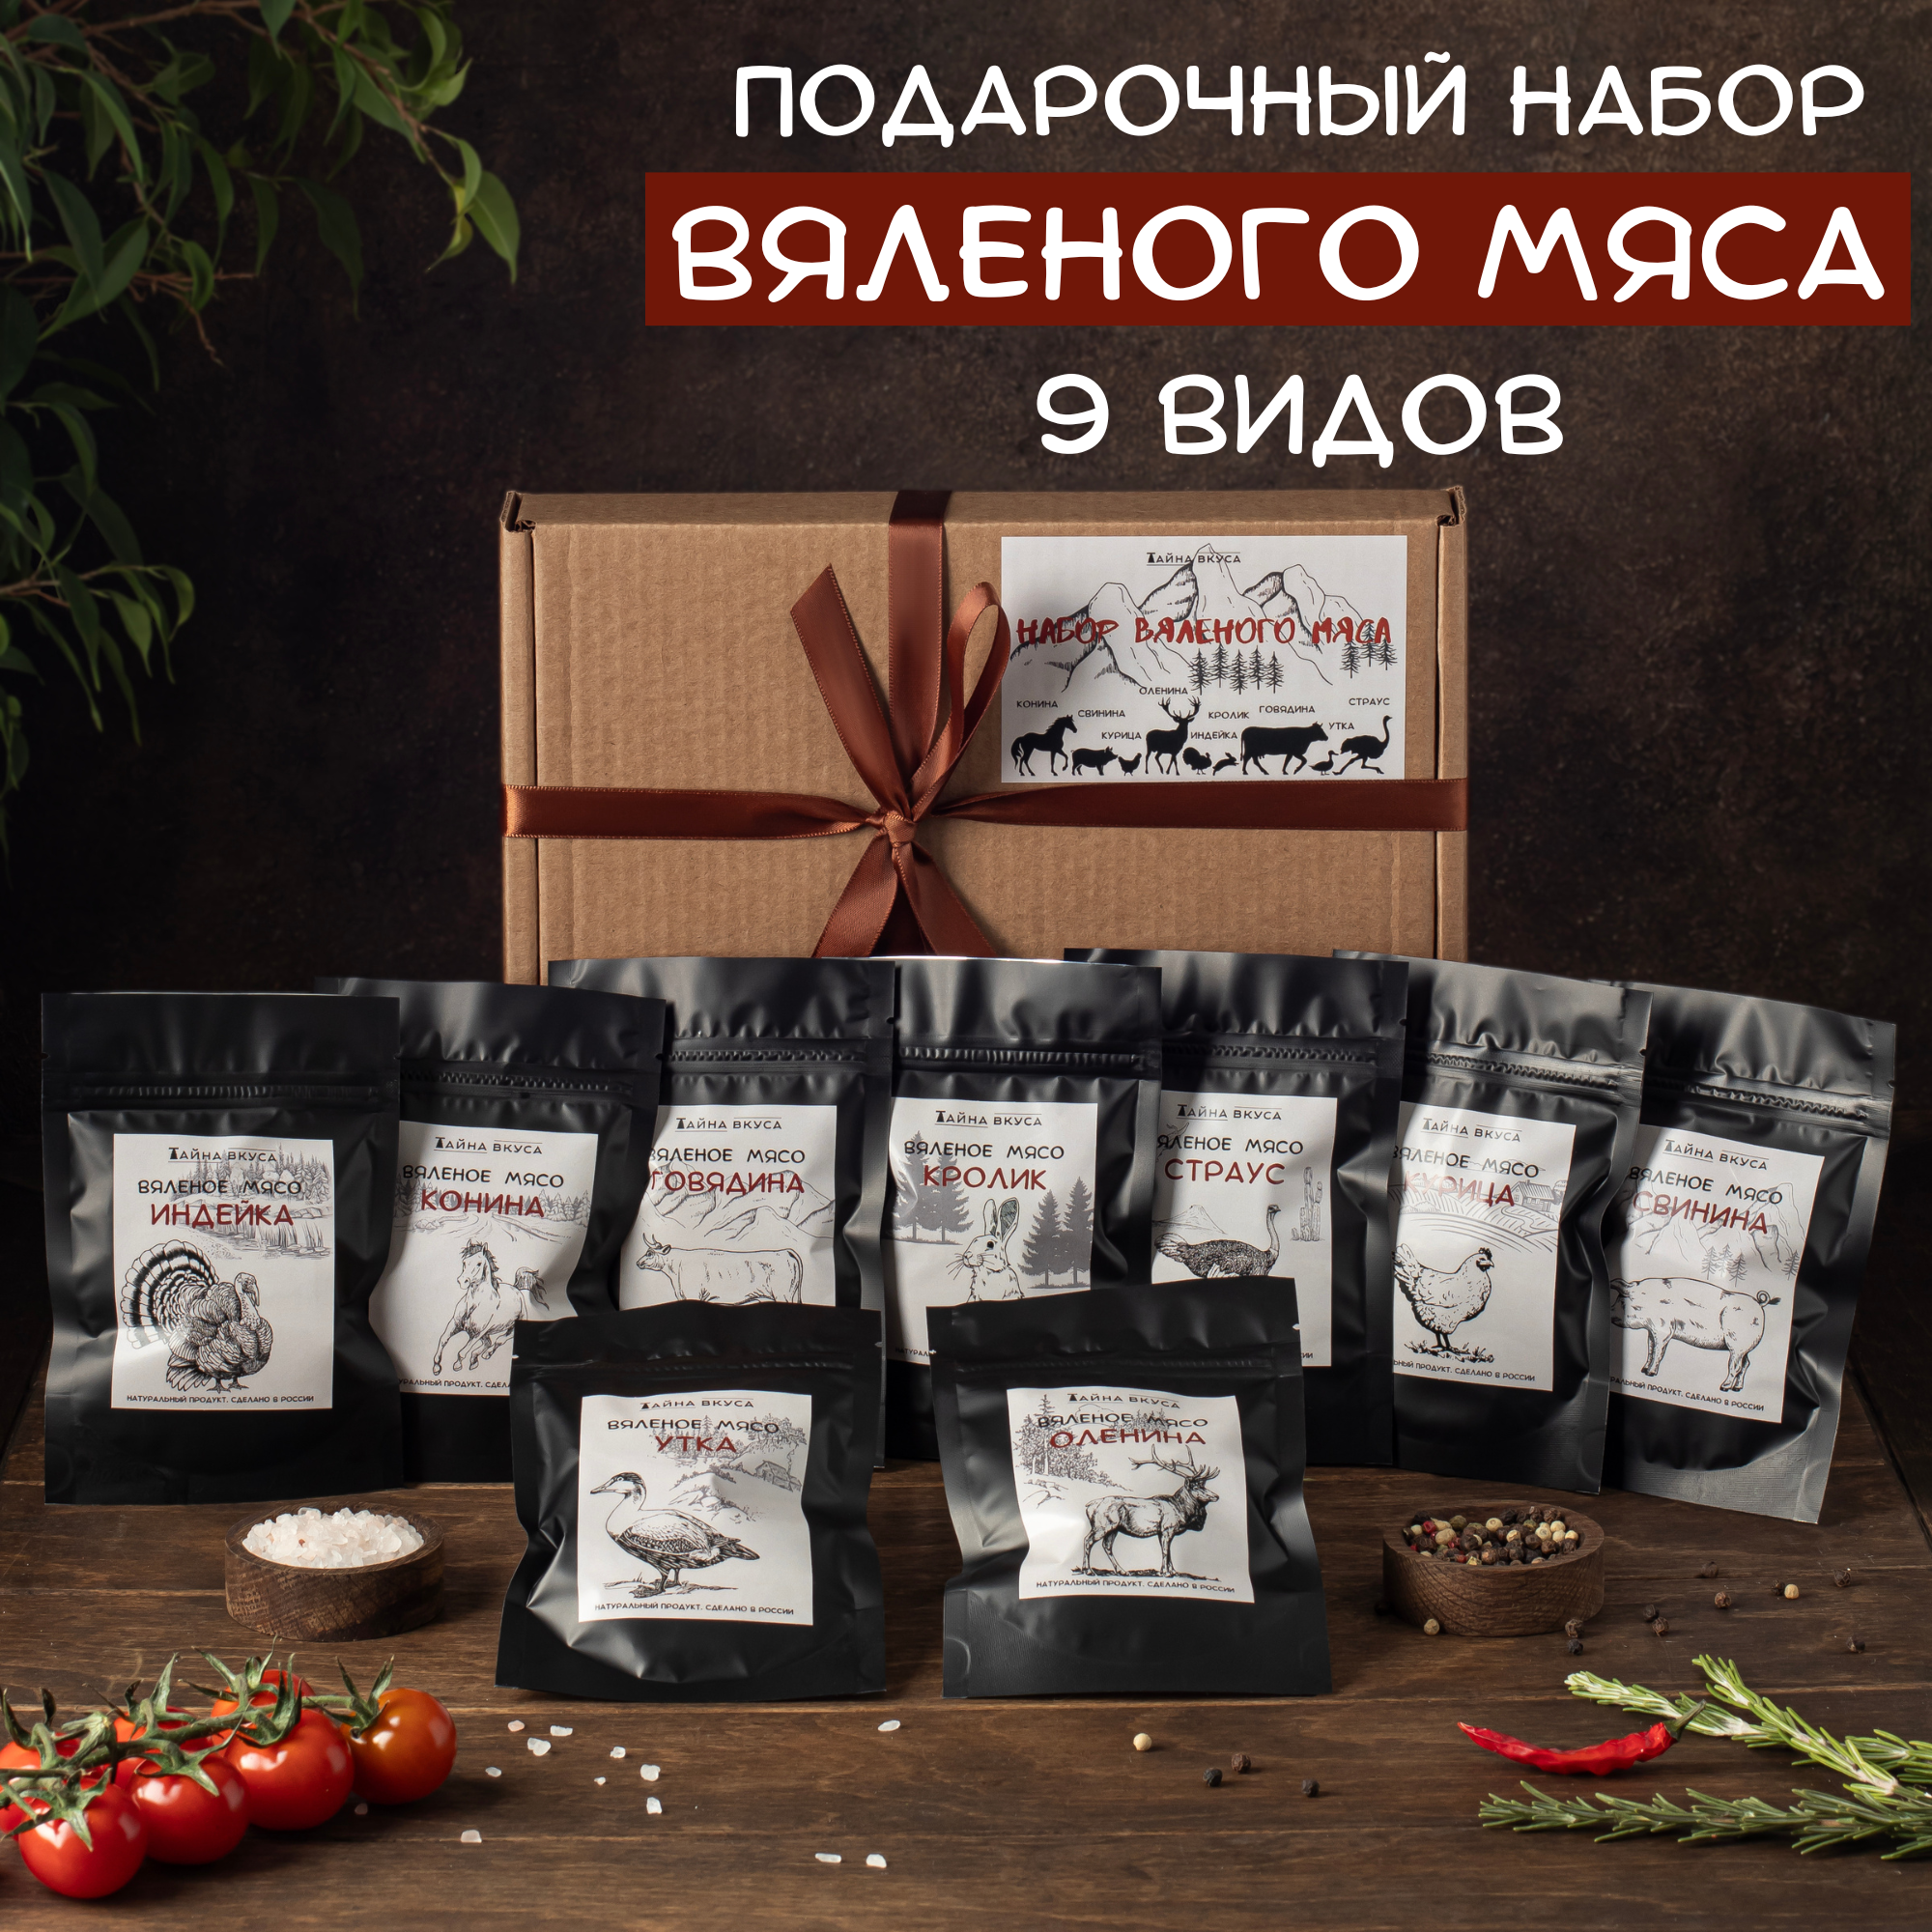 Подарочный набор "Перекус по-сибирски" - 9 вкусов вяленого мяса